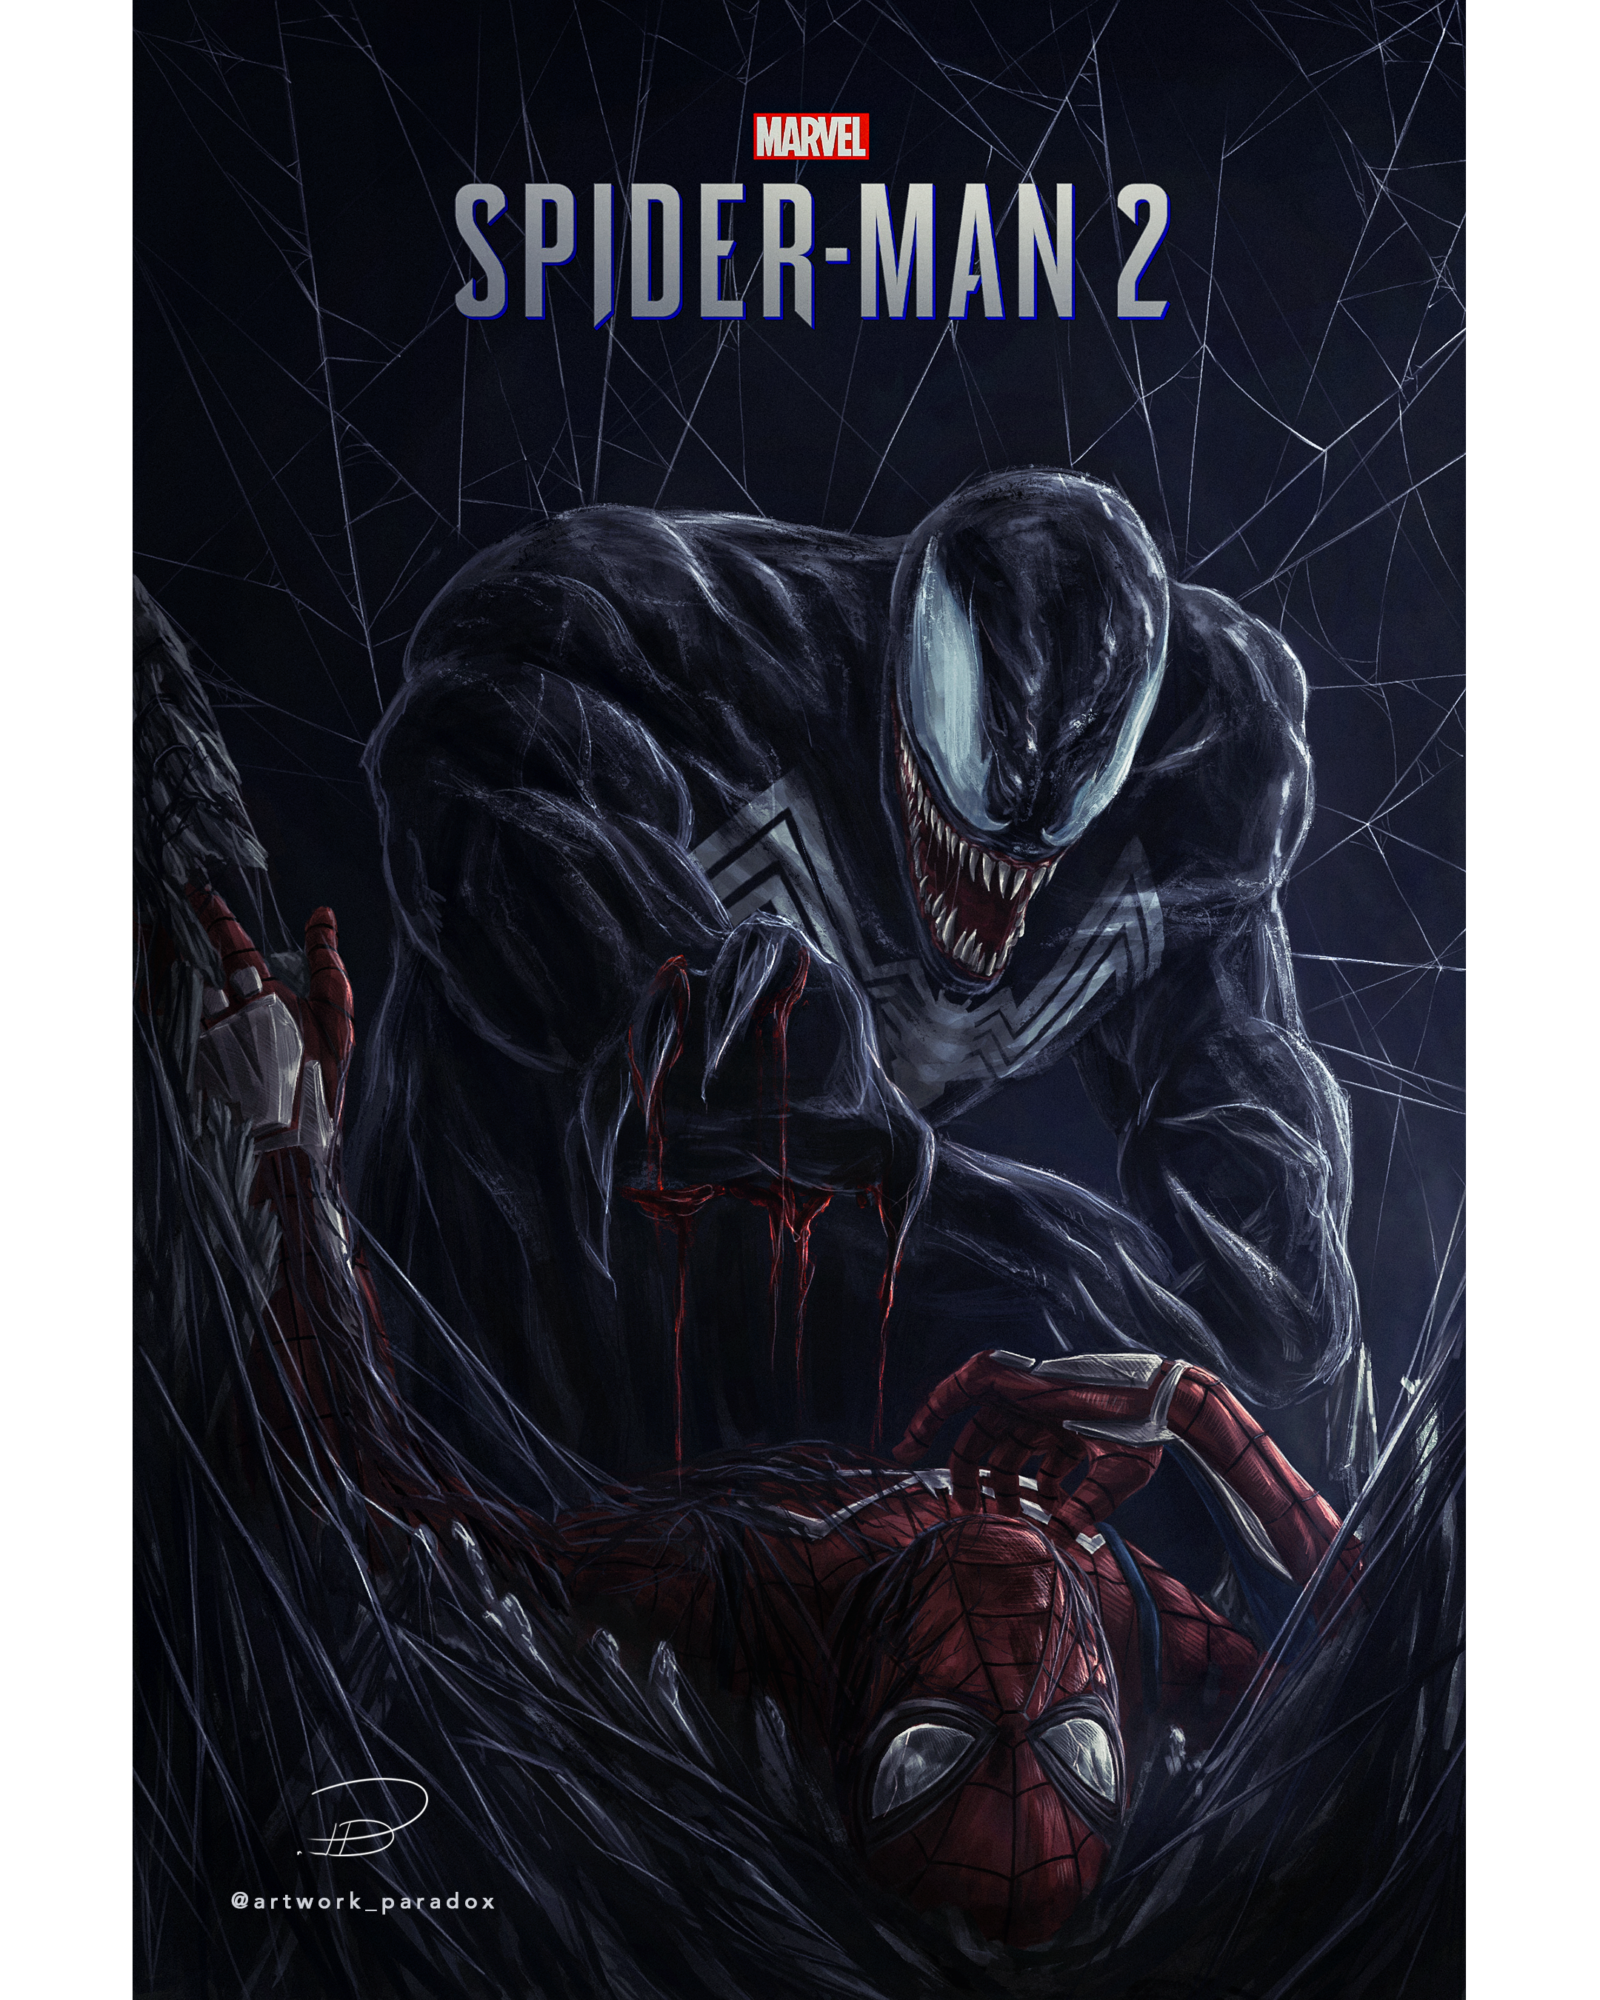 Marvel’s Spider-Man 2 Concept Poster; Venom VS. Spider-Man